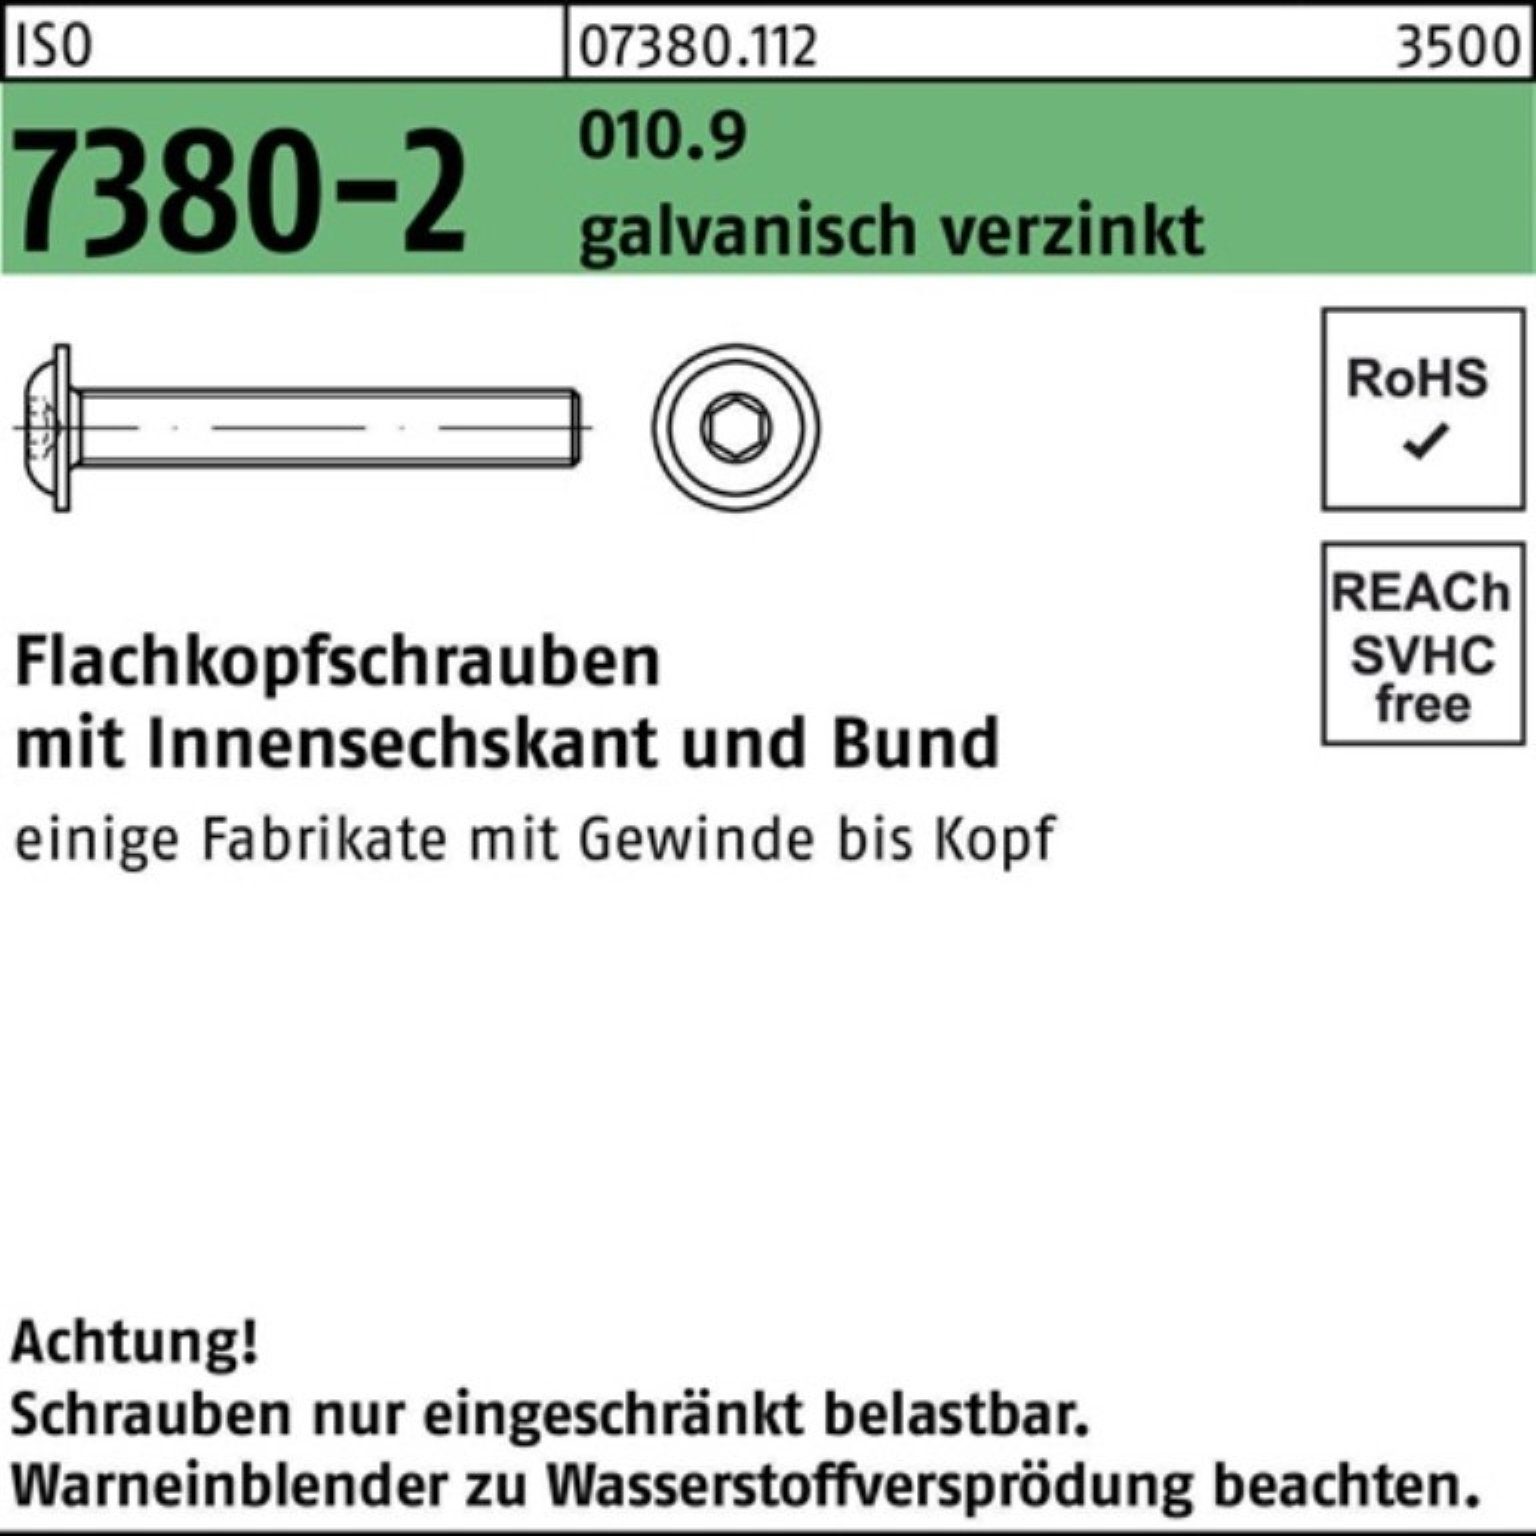 Flachkopfschraube 010.9 500er ISO Reyher Bund/Innen-6kt 7380-2 M3x6 galv Schraube Pack